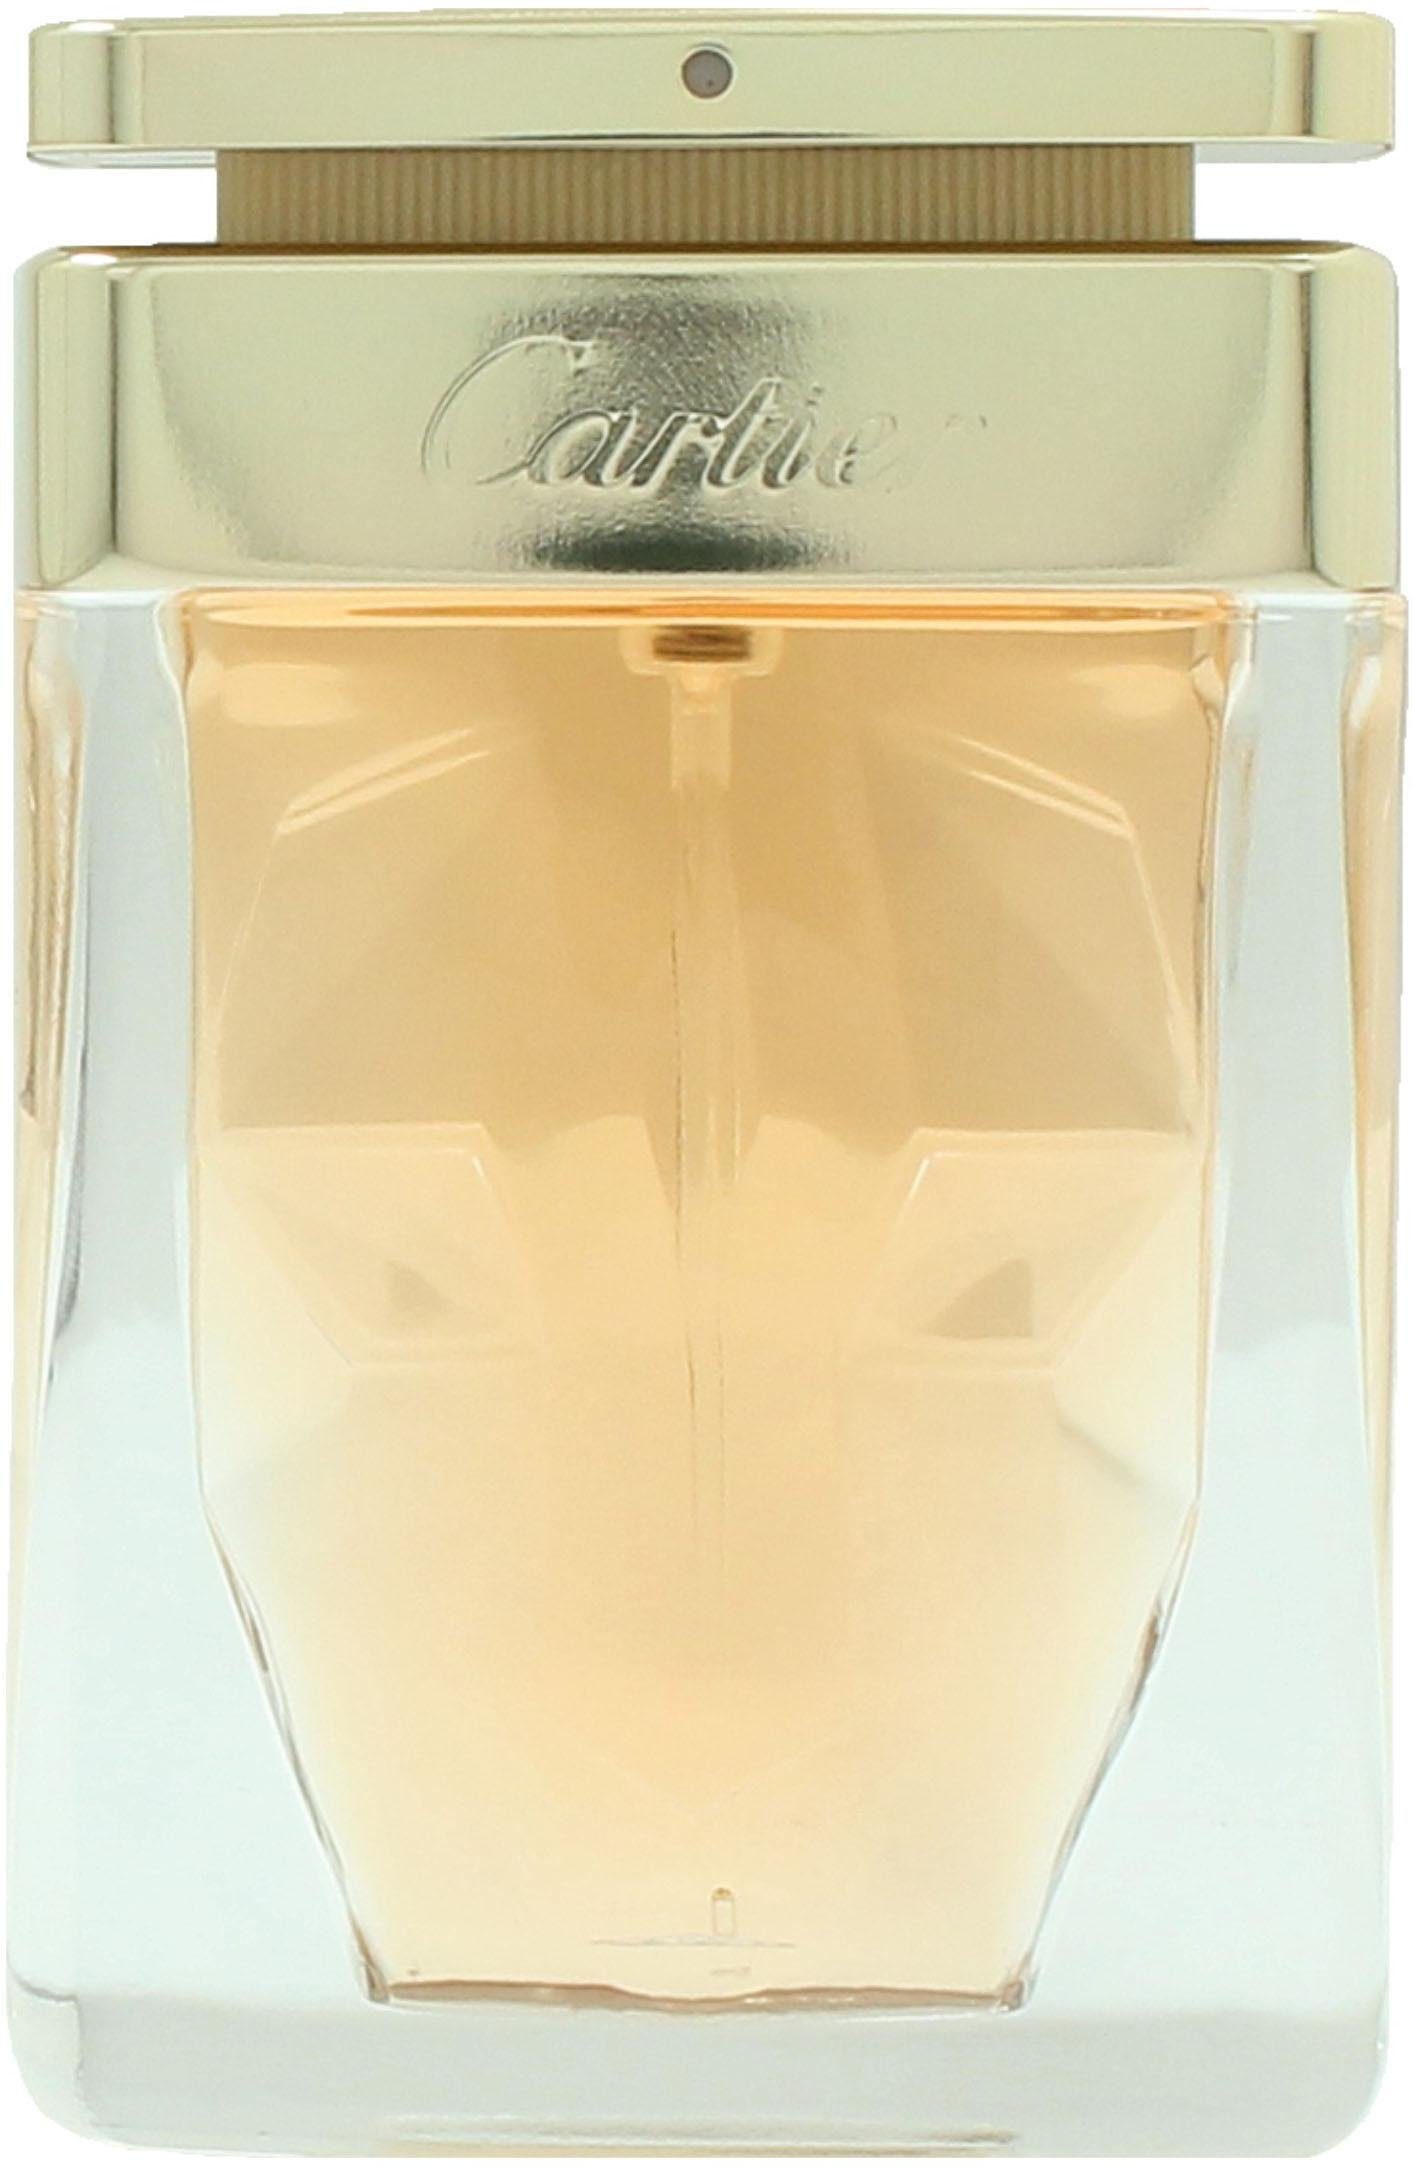 Parfum de Cartier Eau Cartier Panthere La